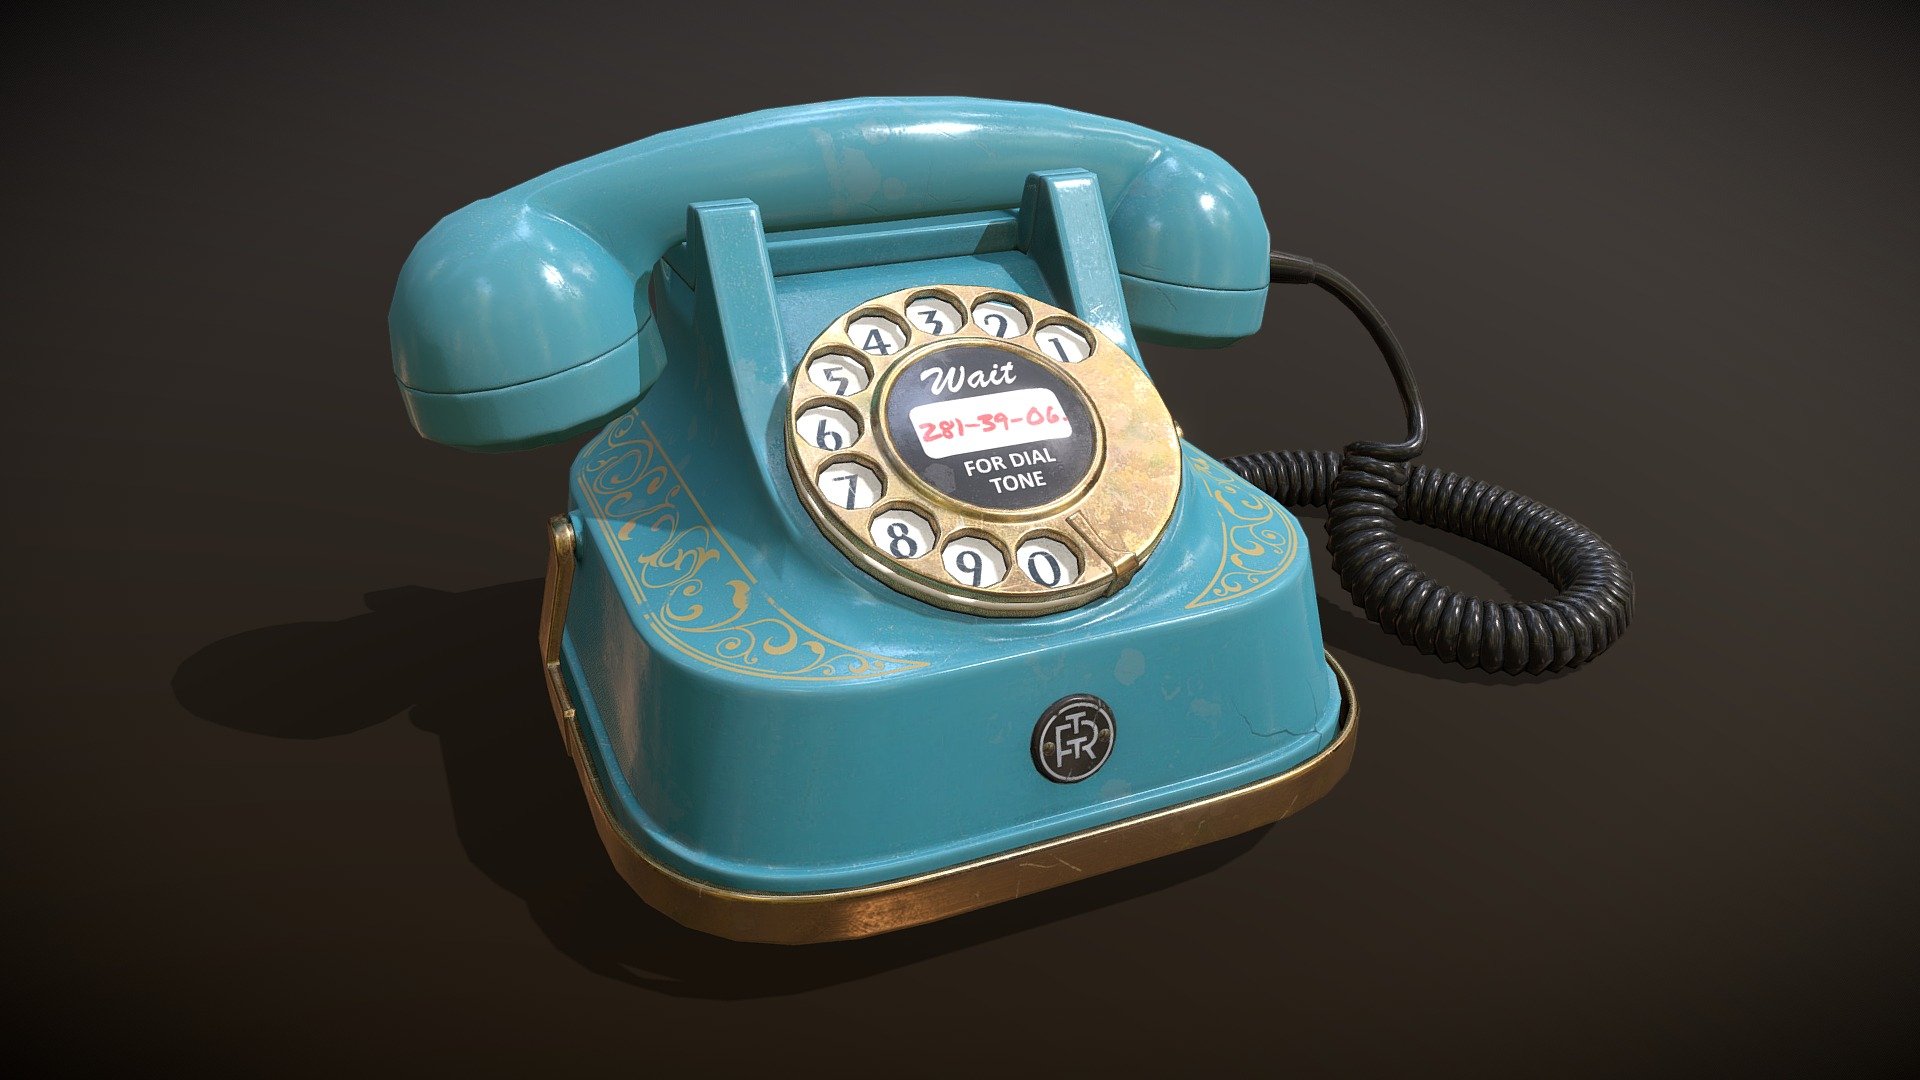 Ol' grandma's rotary dial phone. 
Made in Belgium 3d model